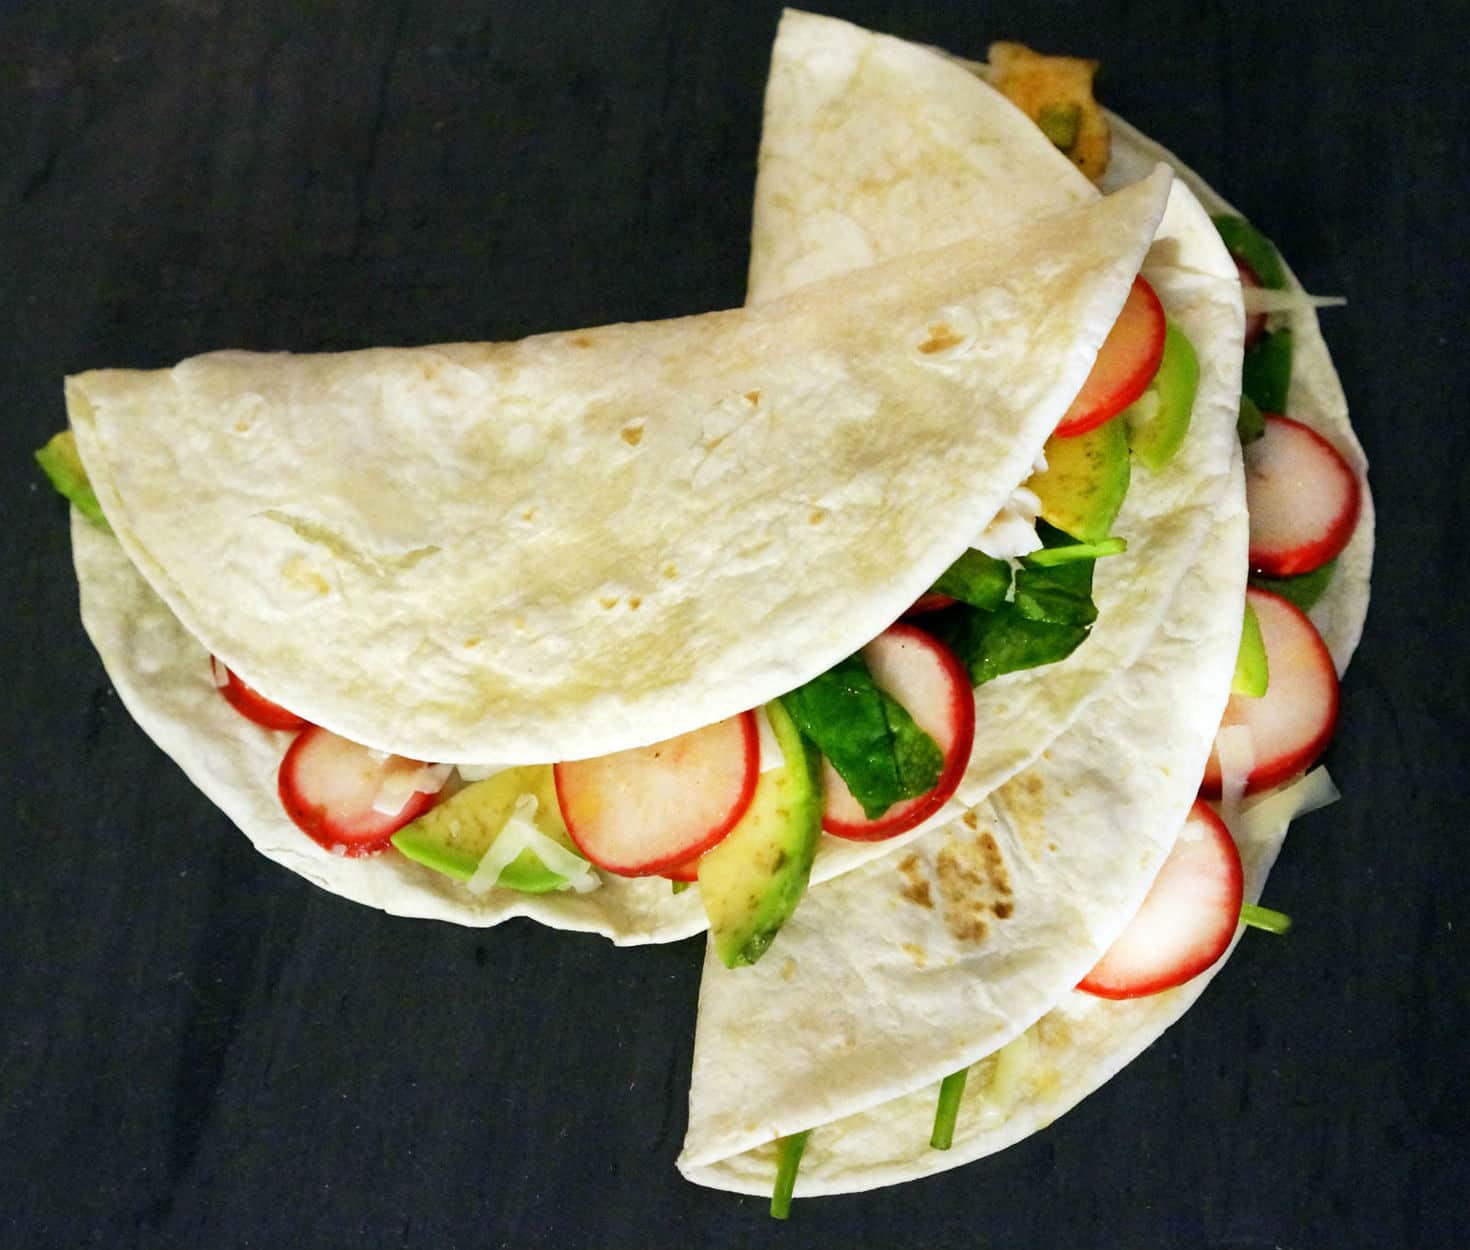 Third Date - Tilapia Salad Tacos